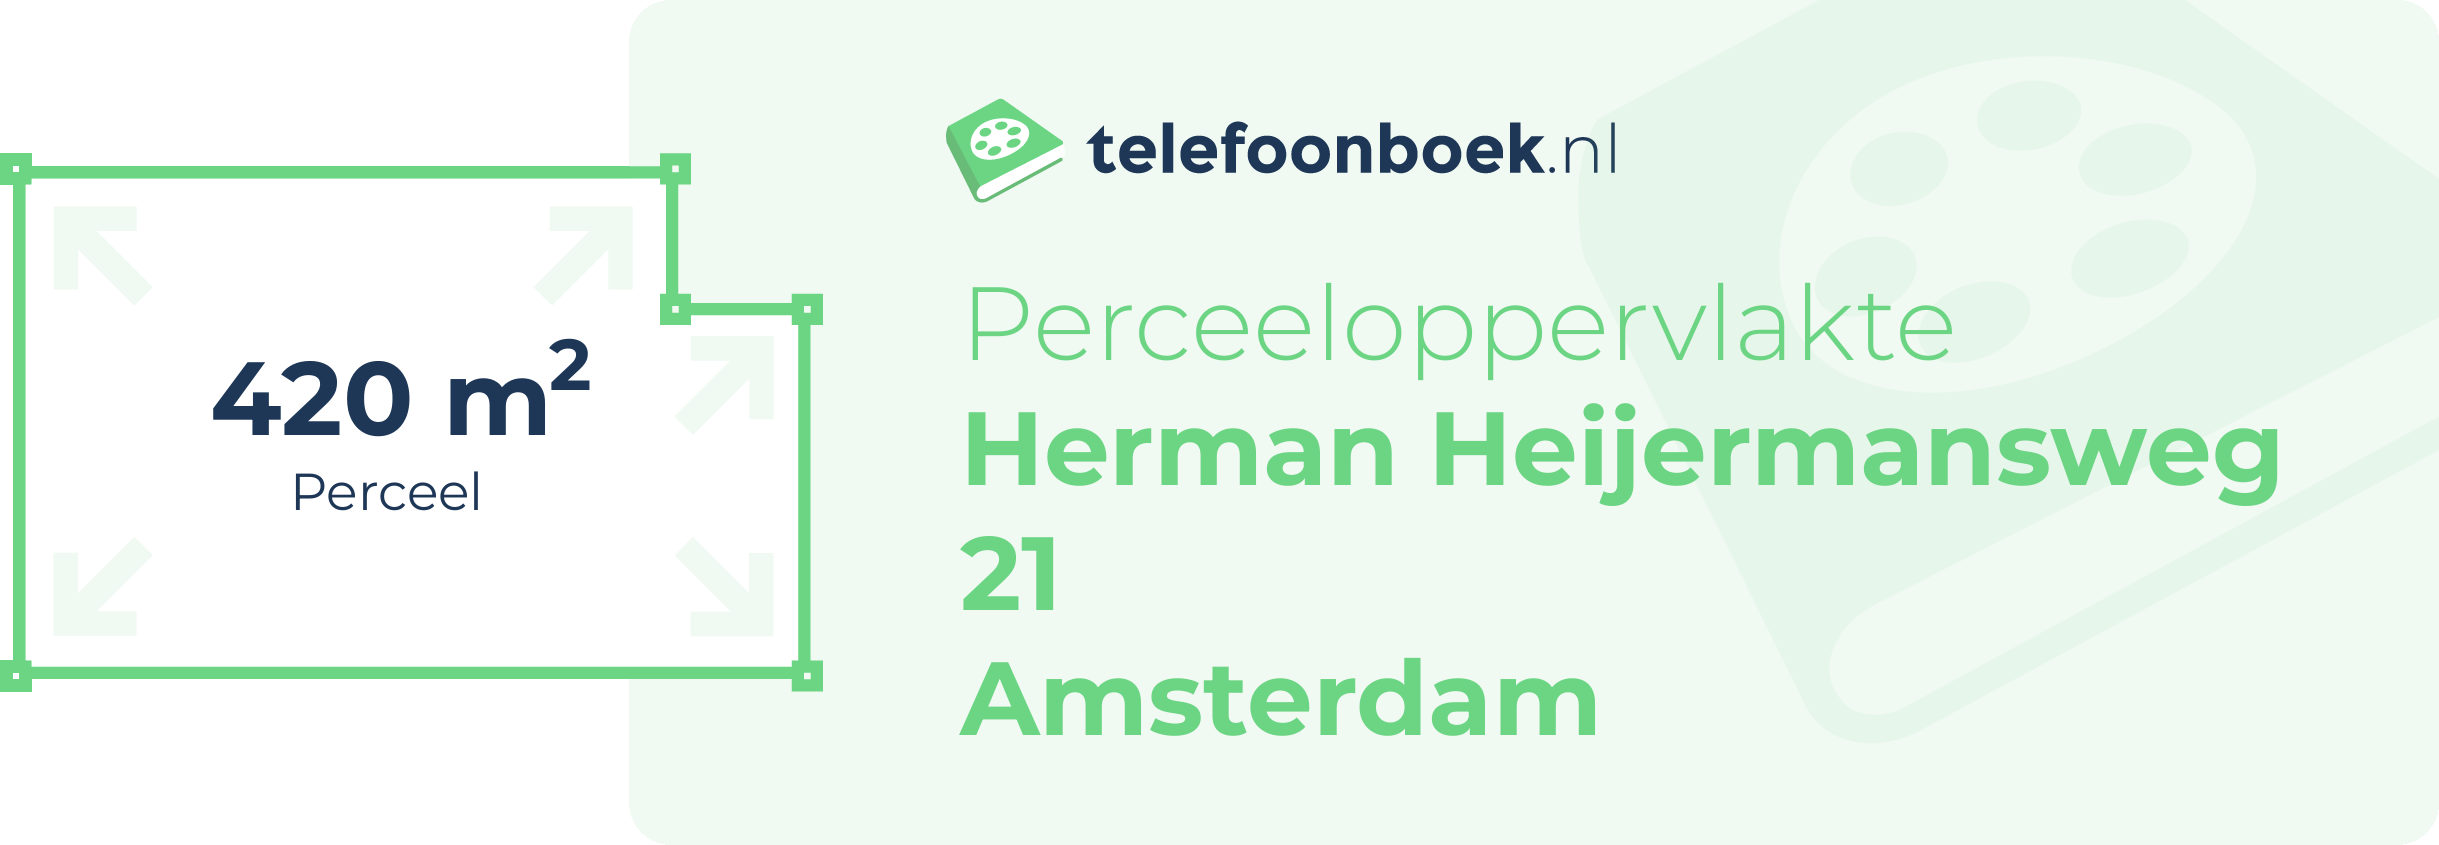 Perceeloppervlakte Herman Heijermansweg 21 Amsterdam